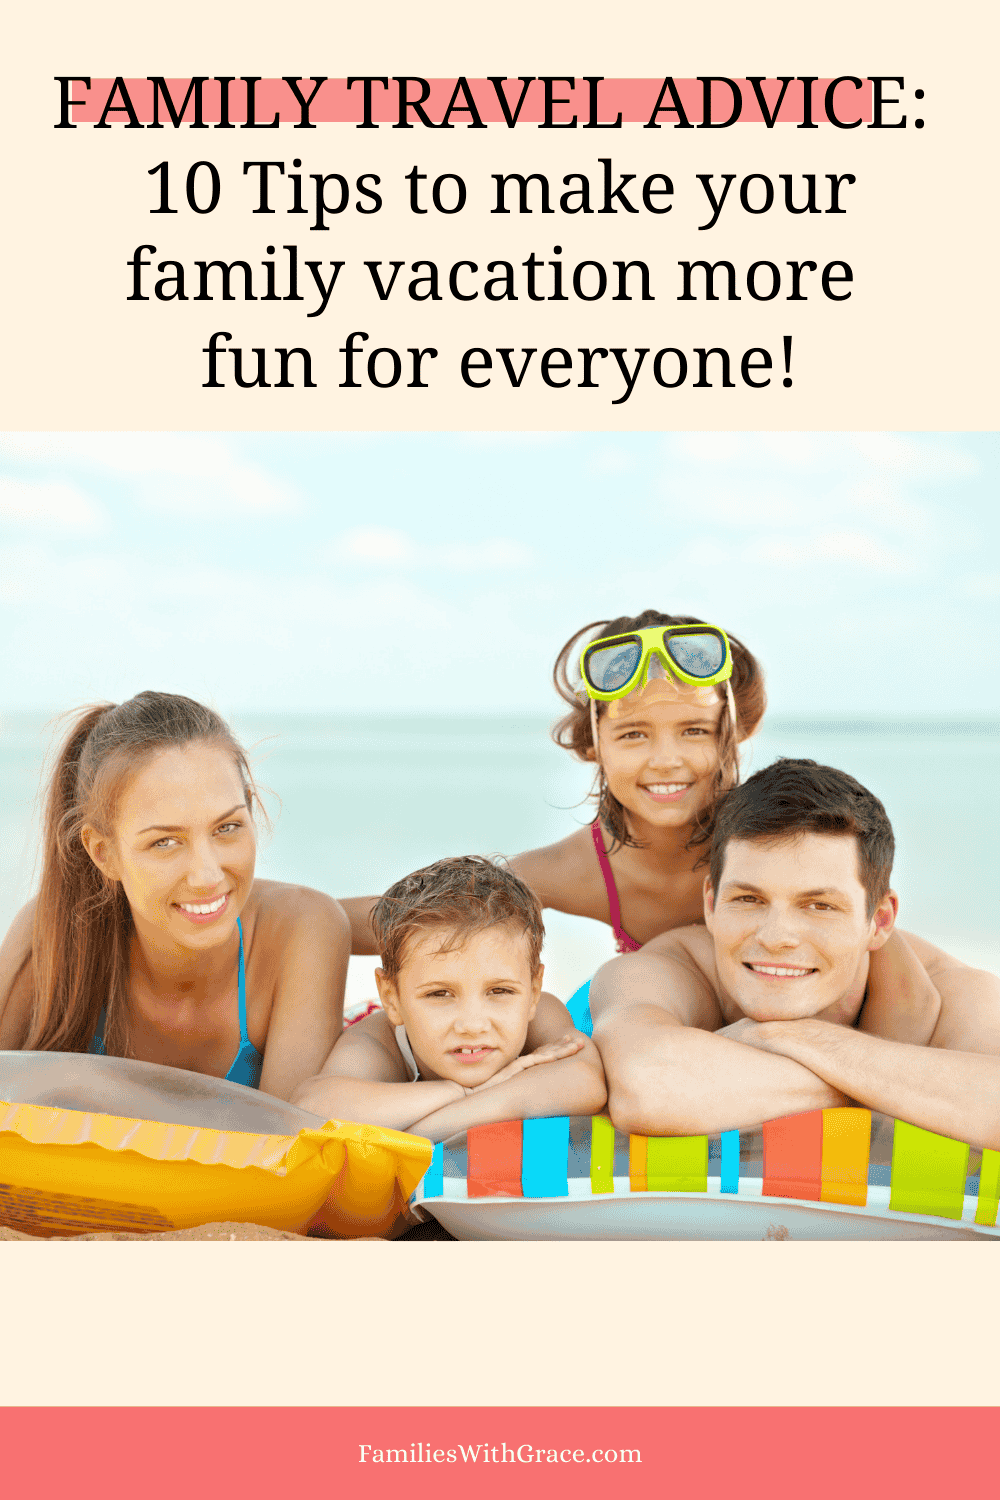 Family travel advice